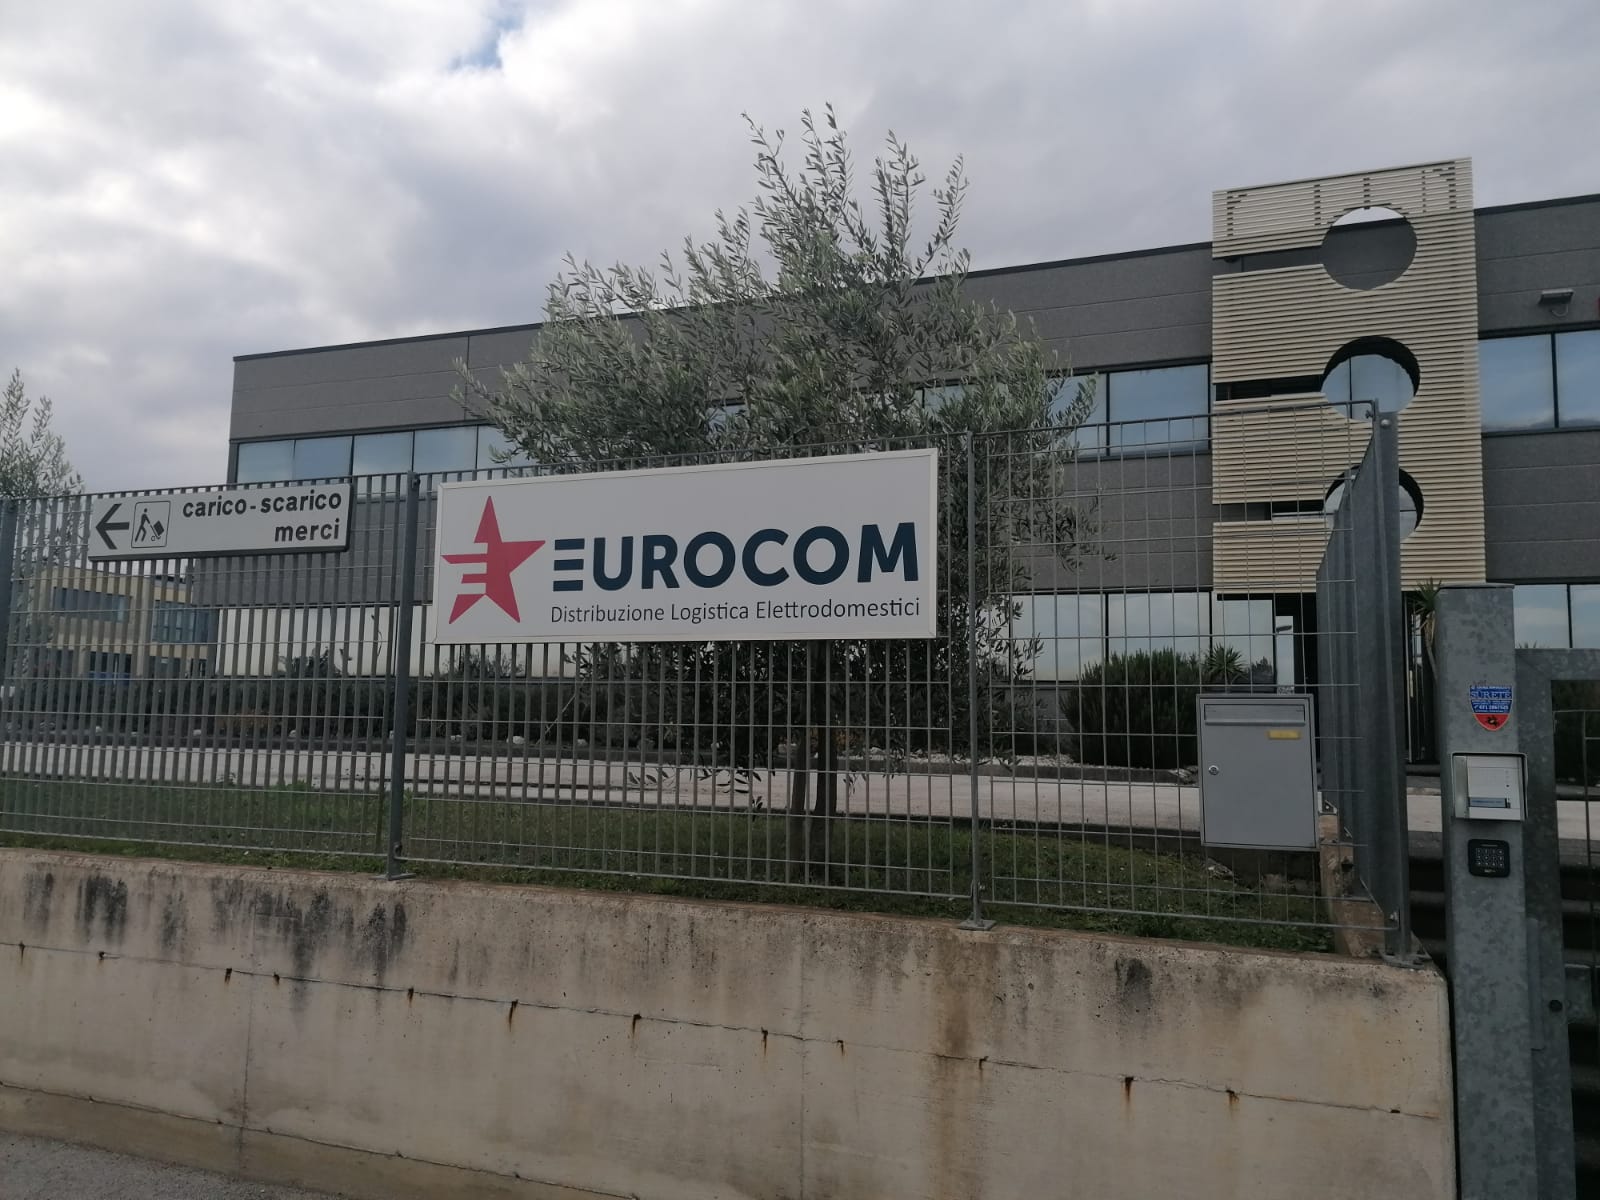 Colpo all’Eurocom. Dai filmati elementi importanti